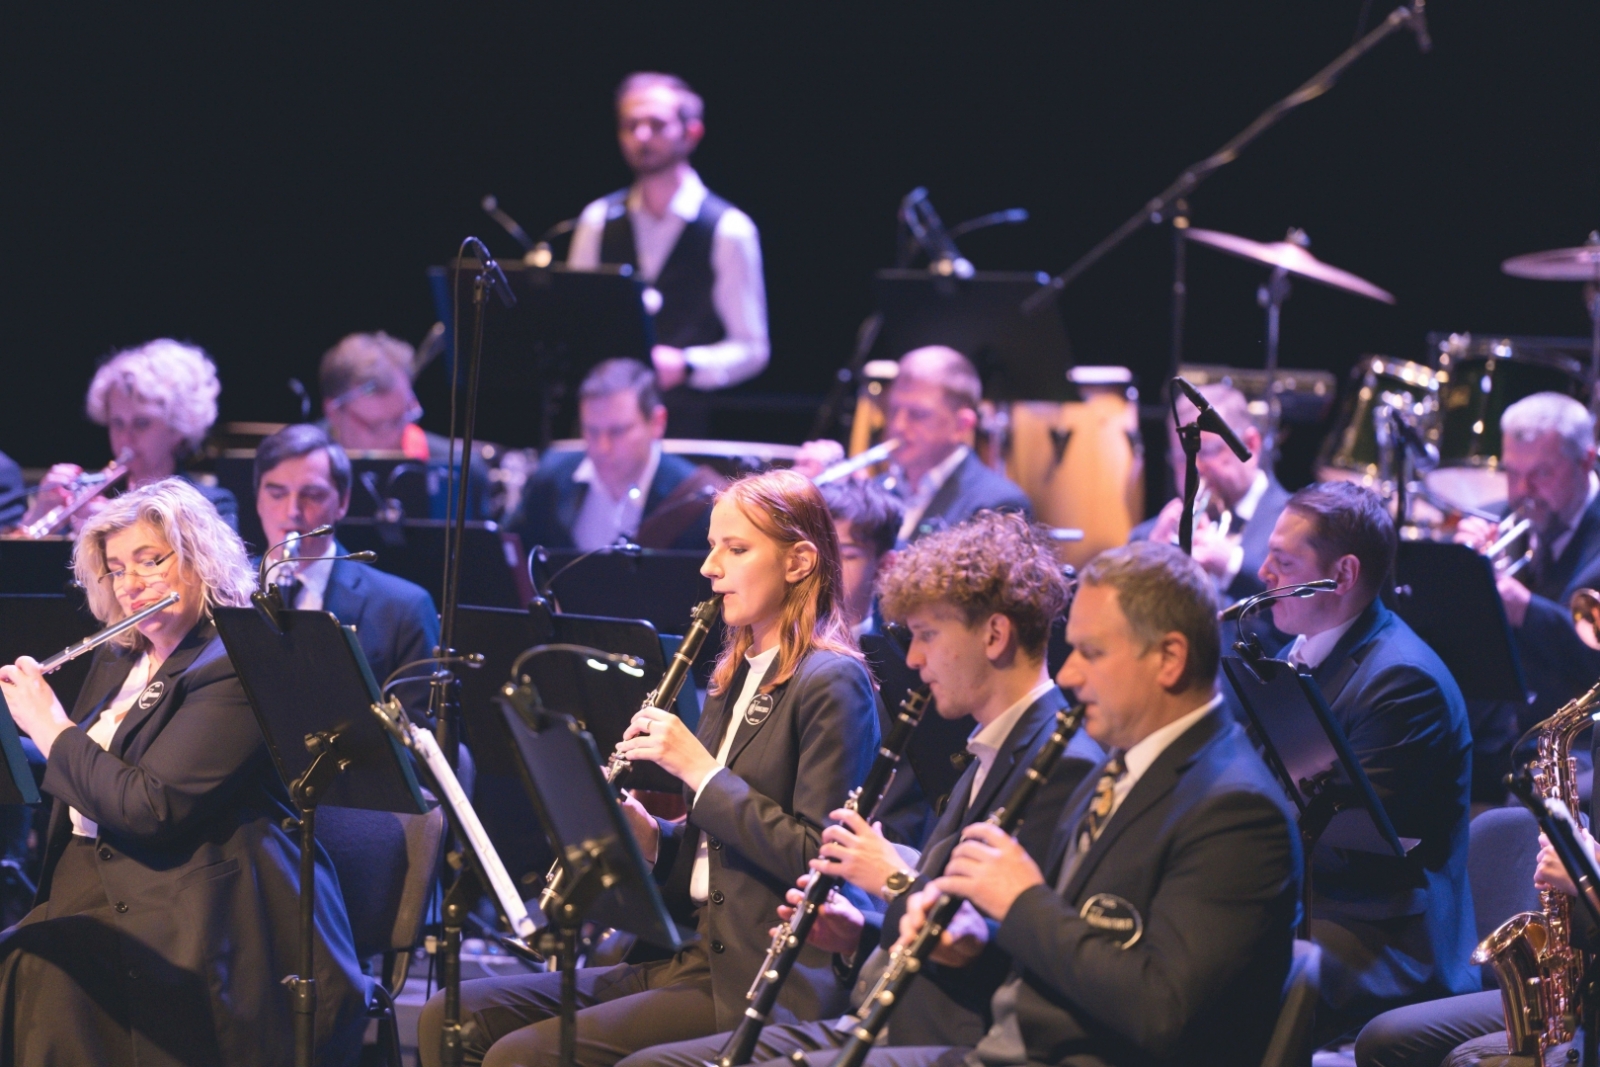 Orķestris sniedz koncertu Ogres dzimšanas dienā, priekšplānā klarnetisti